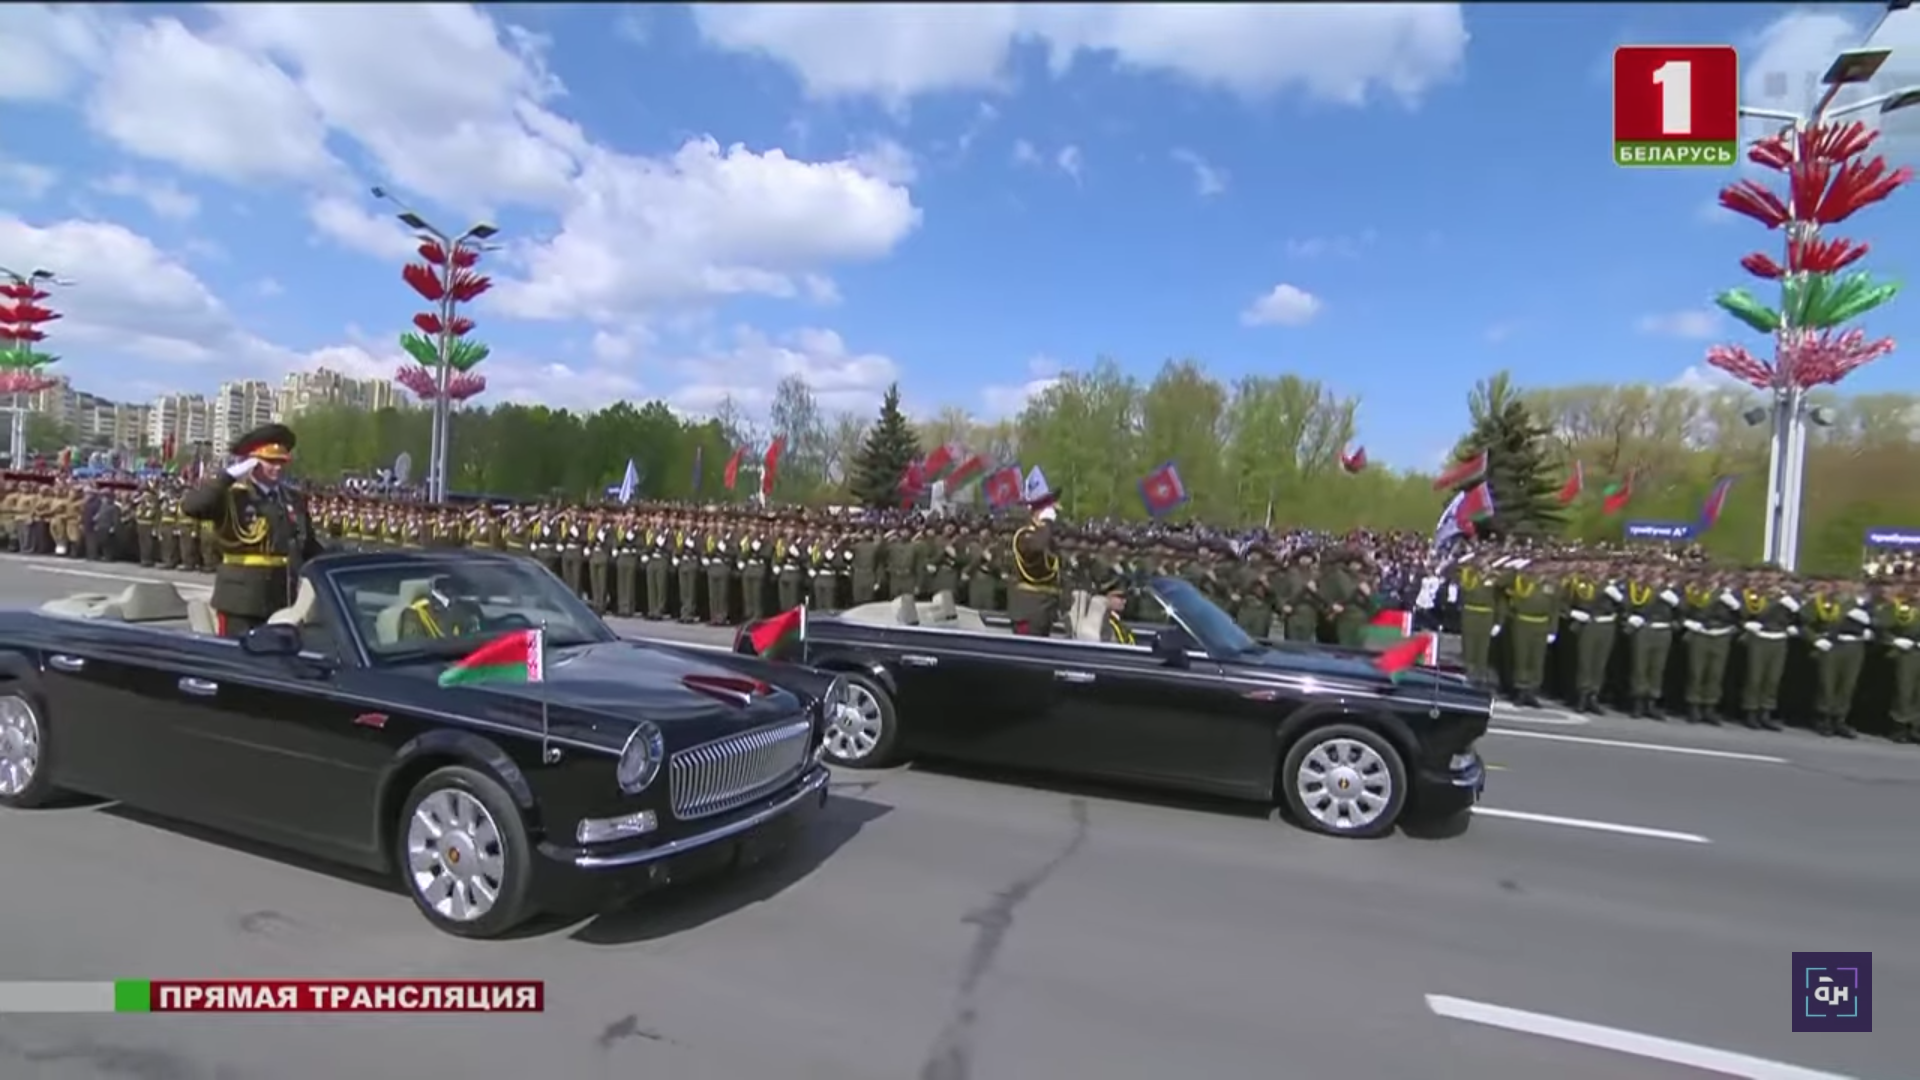 На военном параде в Минске проехали подаренные китайские кабриолеты "Хунцы"